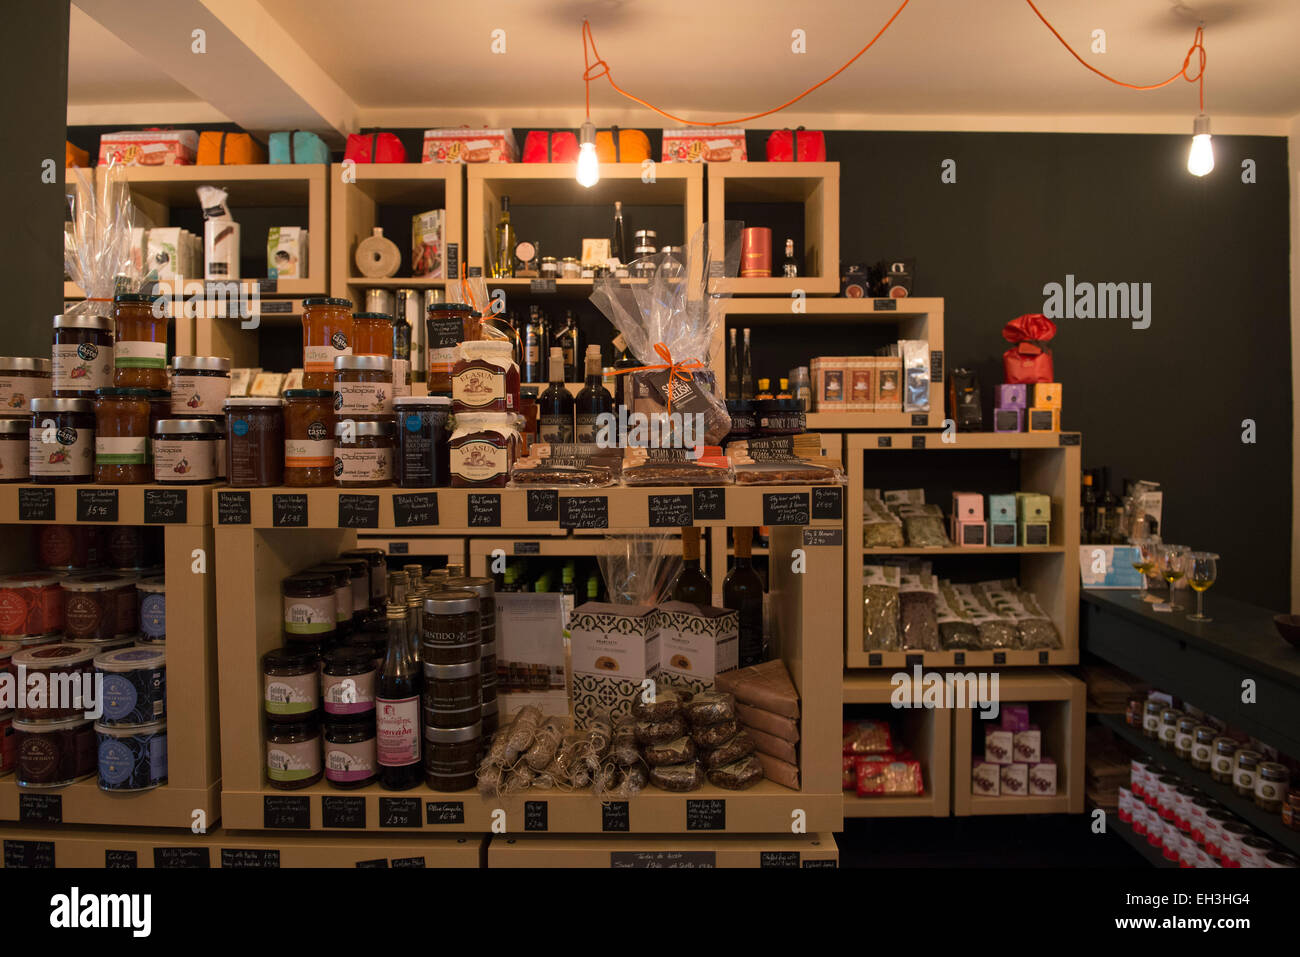 Innenraum der noblen Luxus Gourmet-Essen und trinken-Shop, zeigt die Regalen voller leckere Lebensmittel wie Käse & Marmeladen etc. Stockfoto